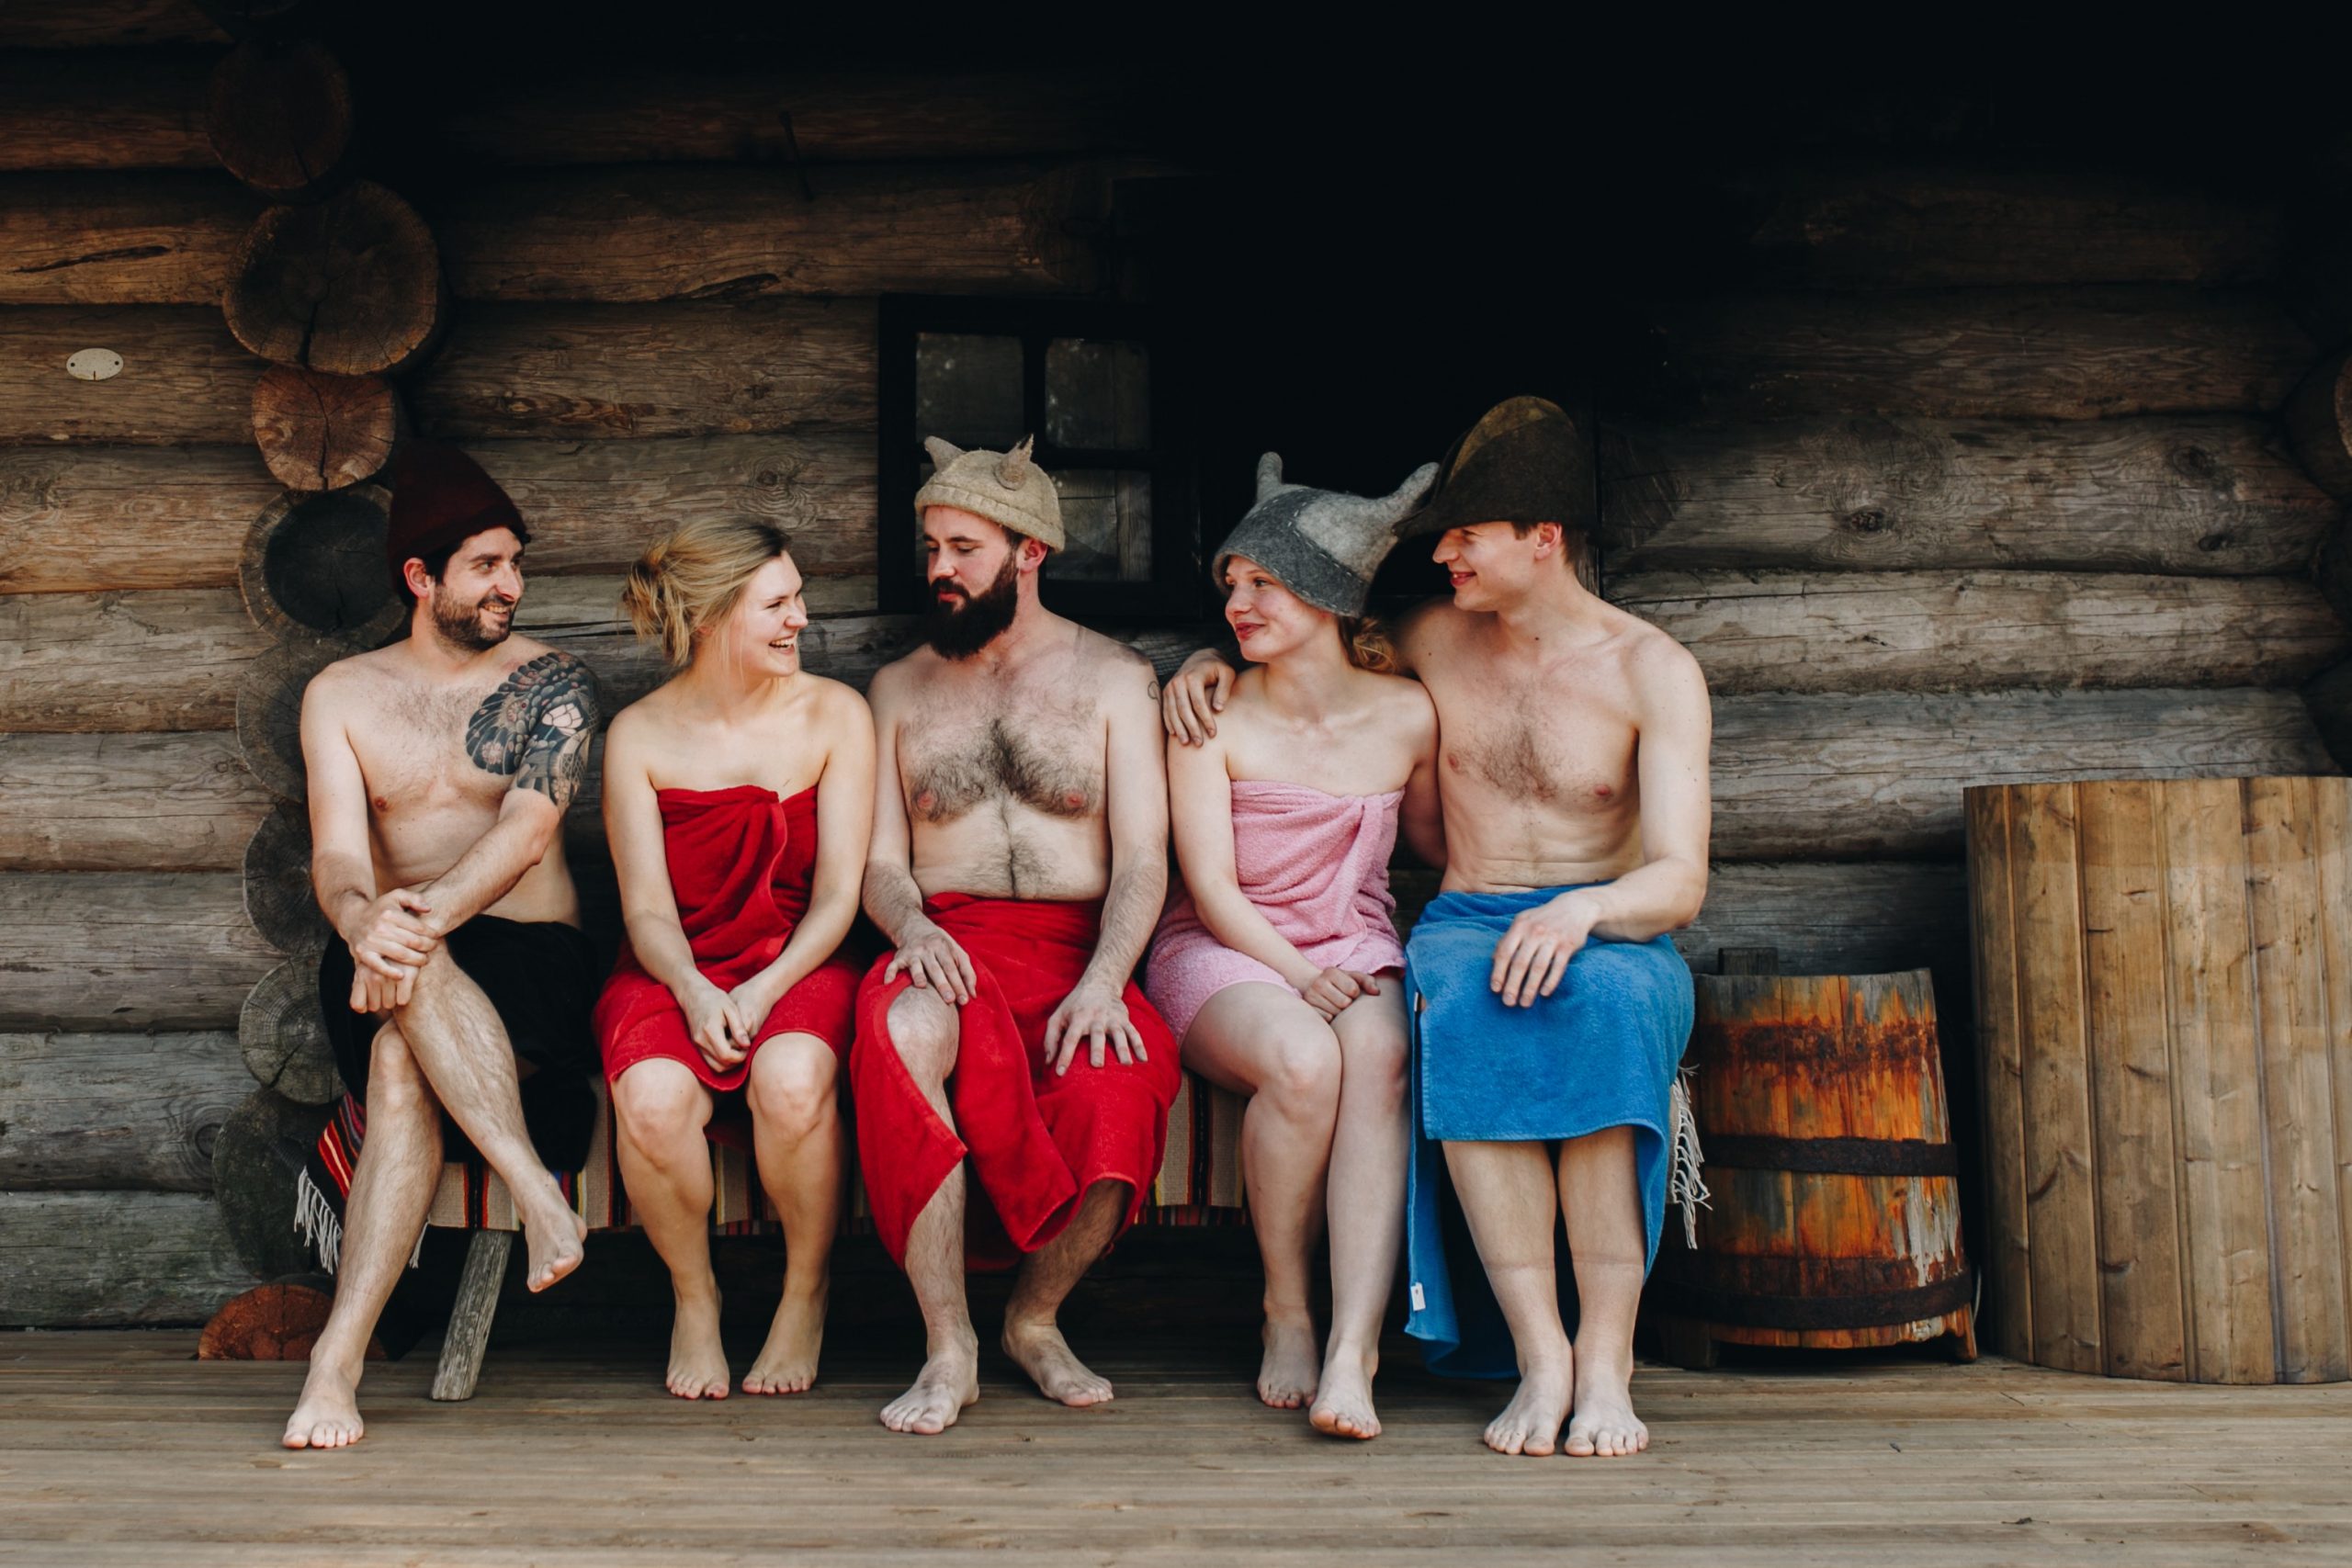 Le sauna : une expérience finlandaise mêlant bien-être et soin du corps